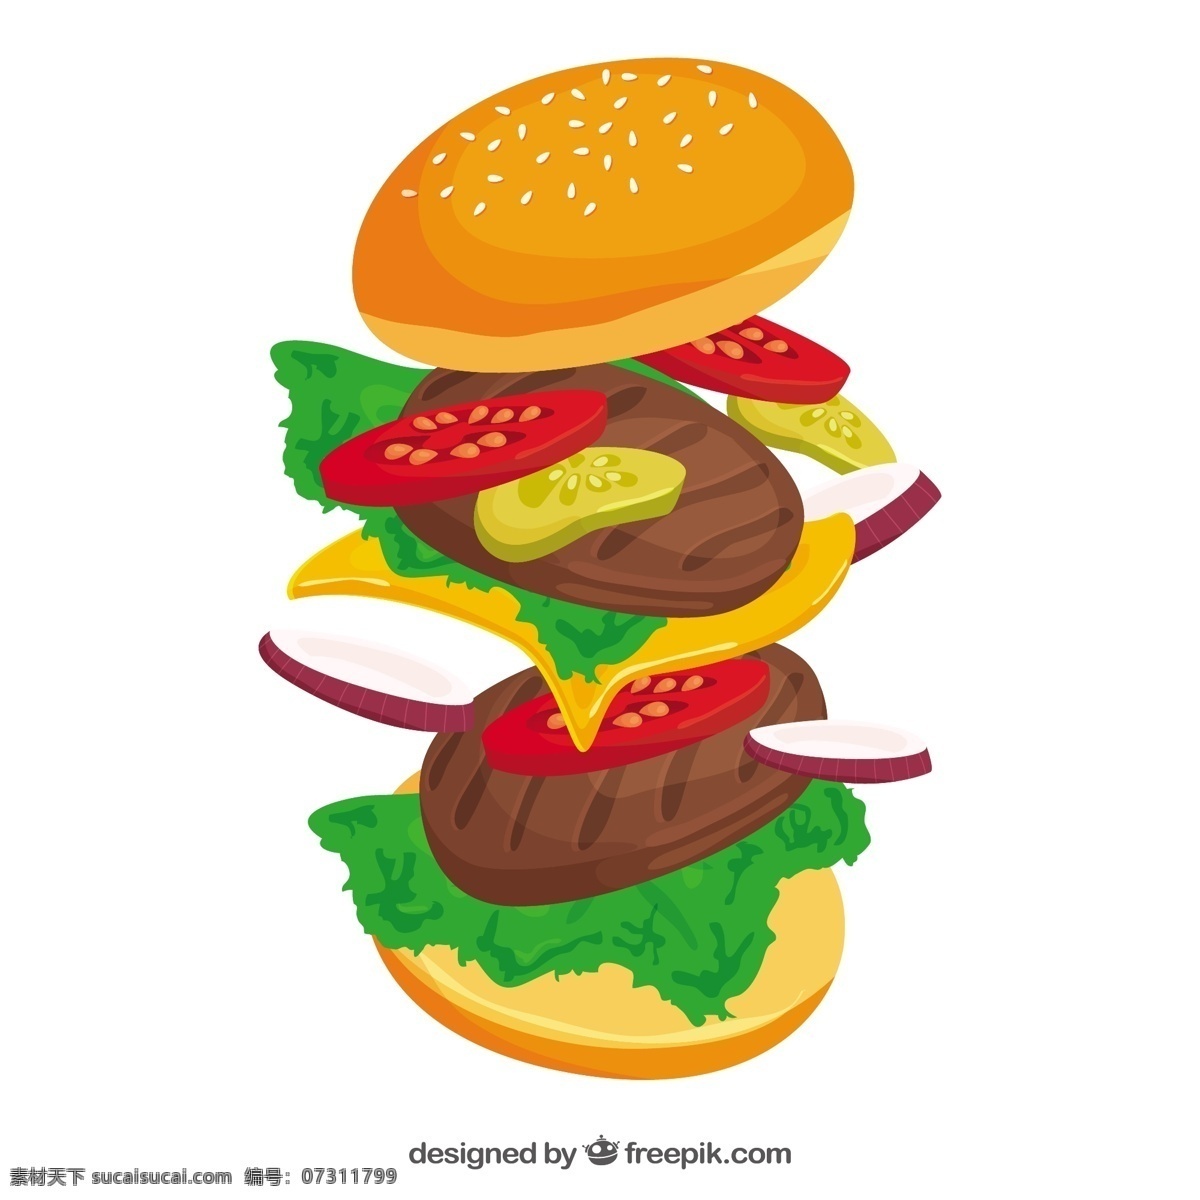 扁平 风格 美味 食 材 汉堡 插图 矢量 扁平风格 美味食材 汉堡插图 矢量素材 汉堡图标 鸡腿堡 手绘汉堡 手绘面包 汉堡包 香辣鸡腿堡 炸鸡汉堡 汉堡矢量图 汉堡套餐